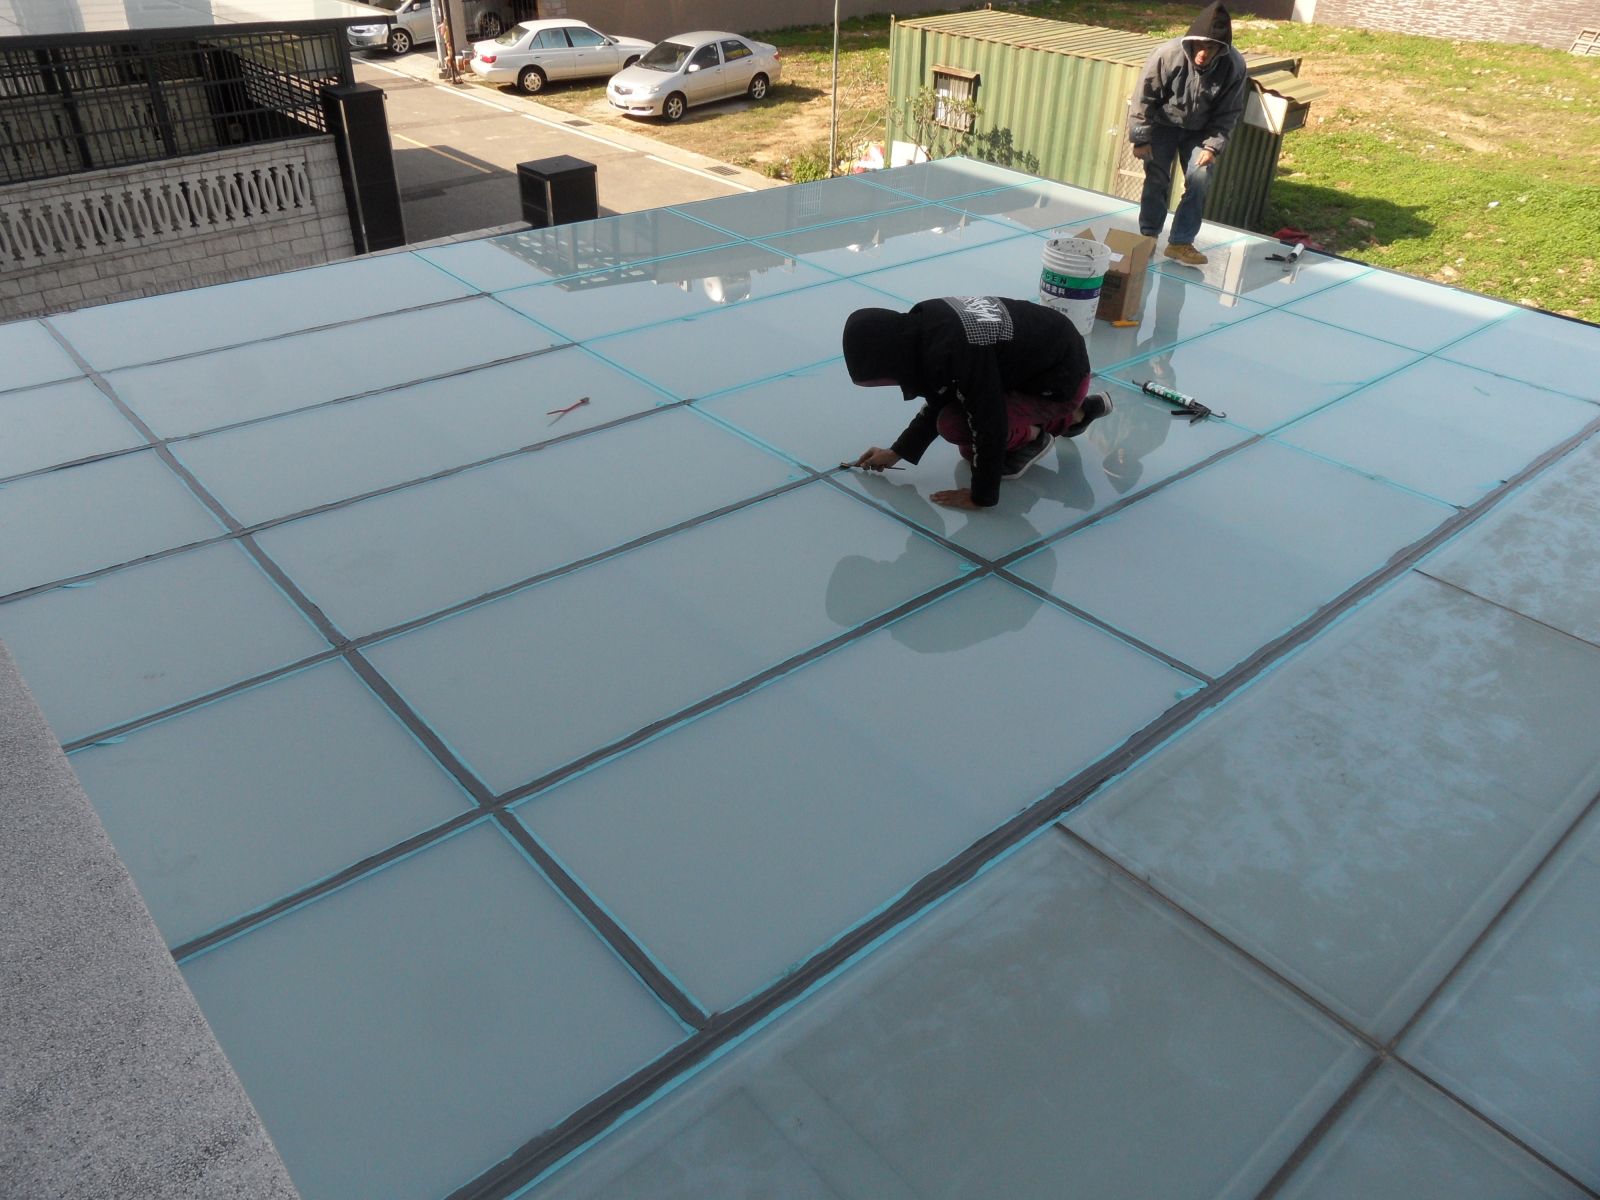 屋頂玻璃採用5+5膠合白膜,玻璃與玻璃間伸縮縫確實施打矽利康填滿